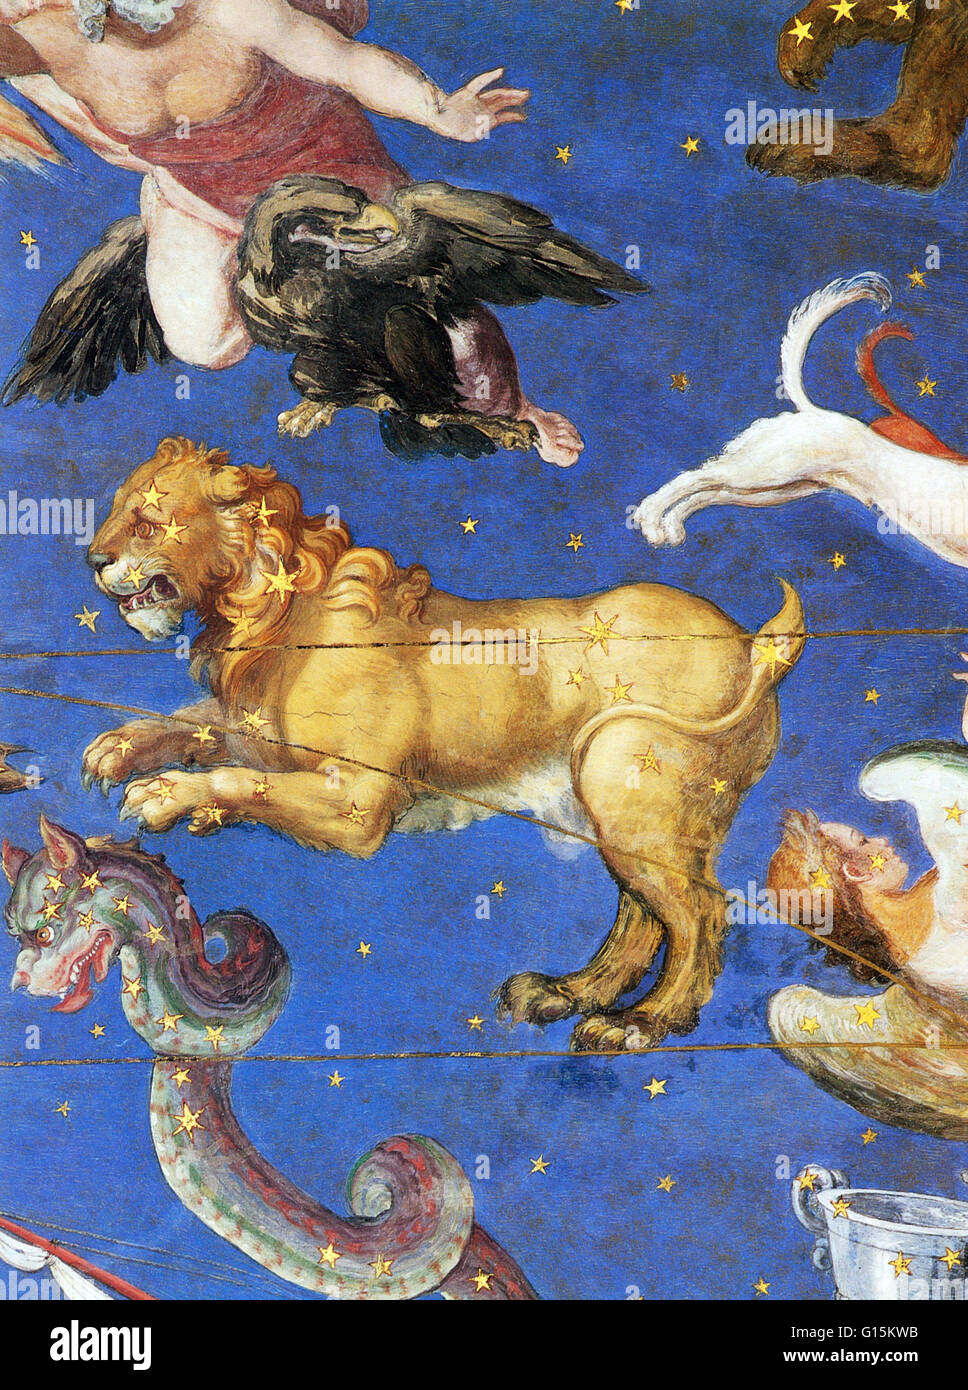 Sternbild an der Decke in der Villa Farnese, Caprarola, Italien im Jahre 1575 gemalt. Leo ist einer der Sternbilder des Tierkreises, zwischen Krebs im Westen und Jungfrau im Osten liegen. Sein Name ist lateinisch für Lion. Eines der 48 Sternbilder descr Stockfoto